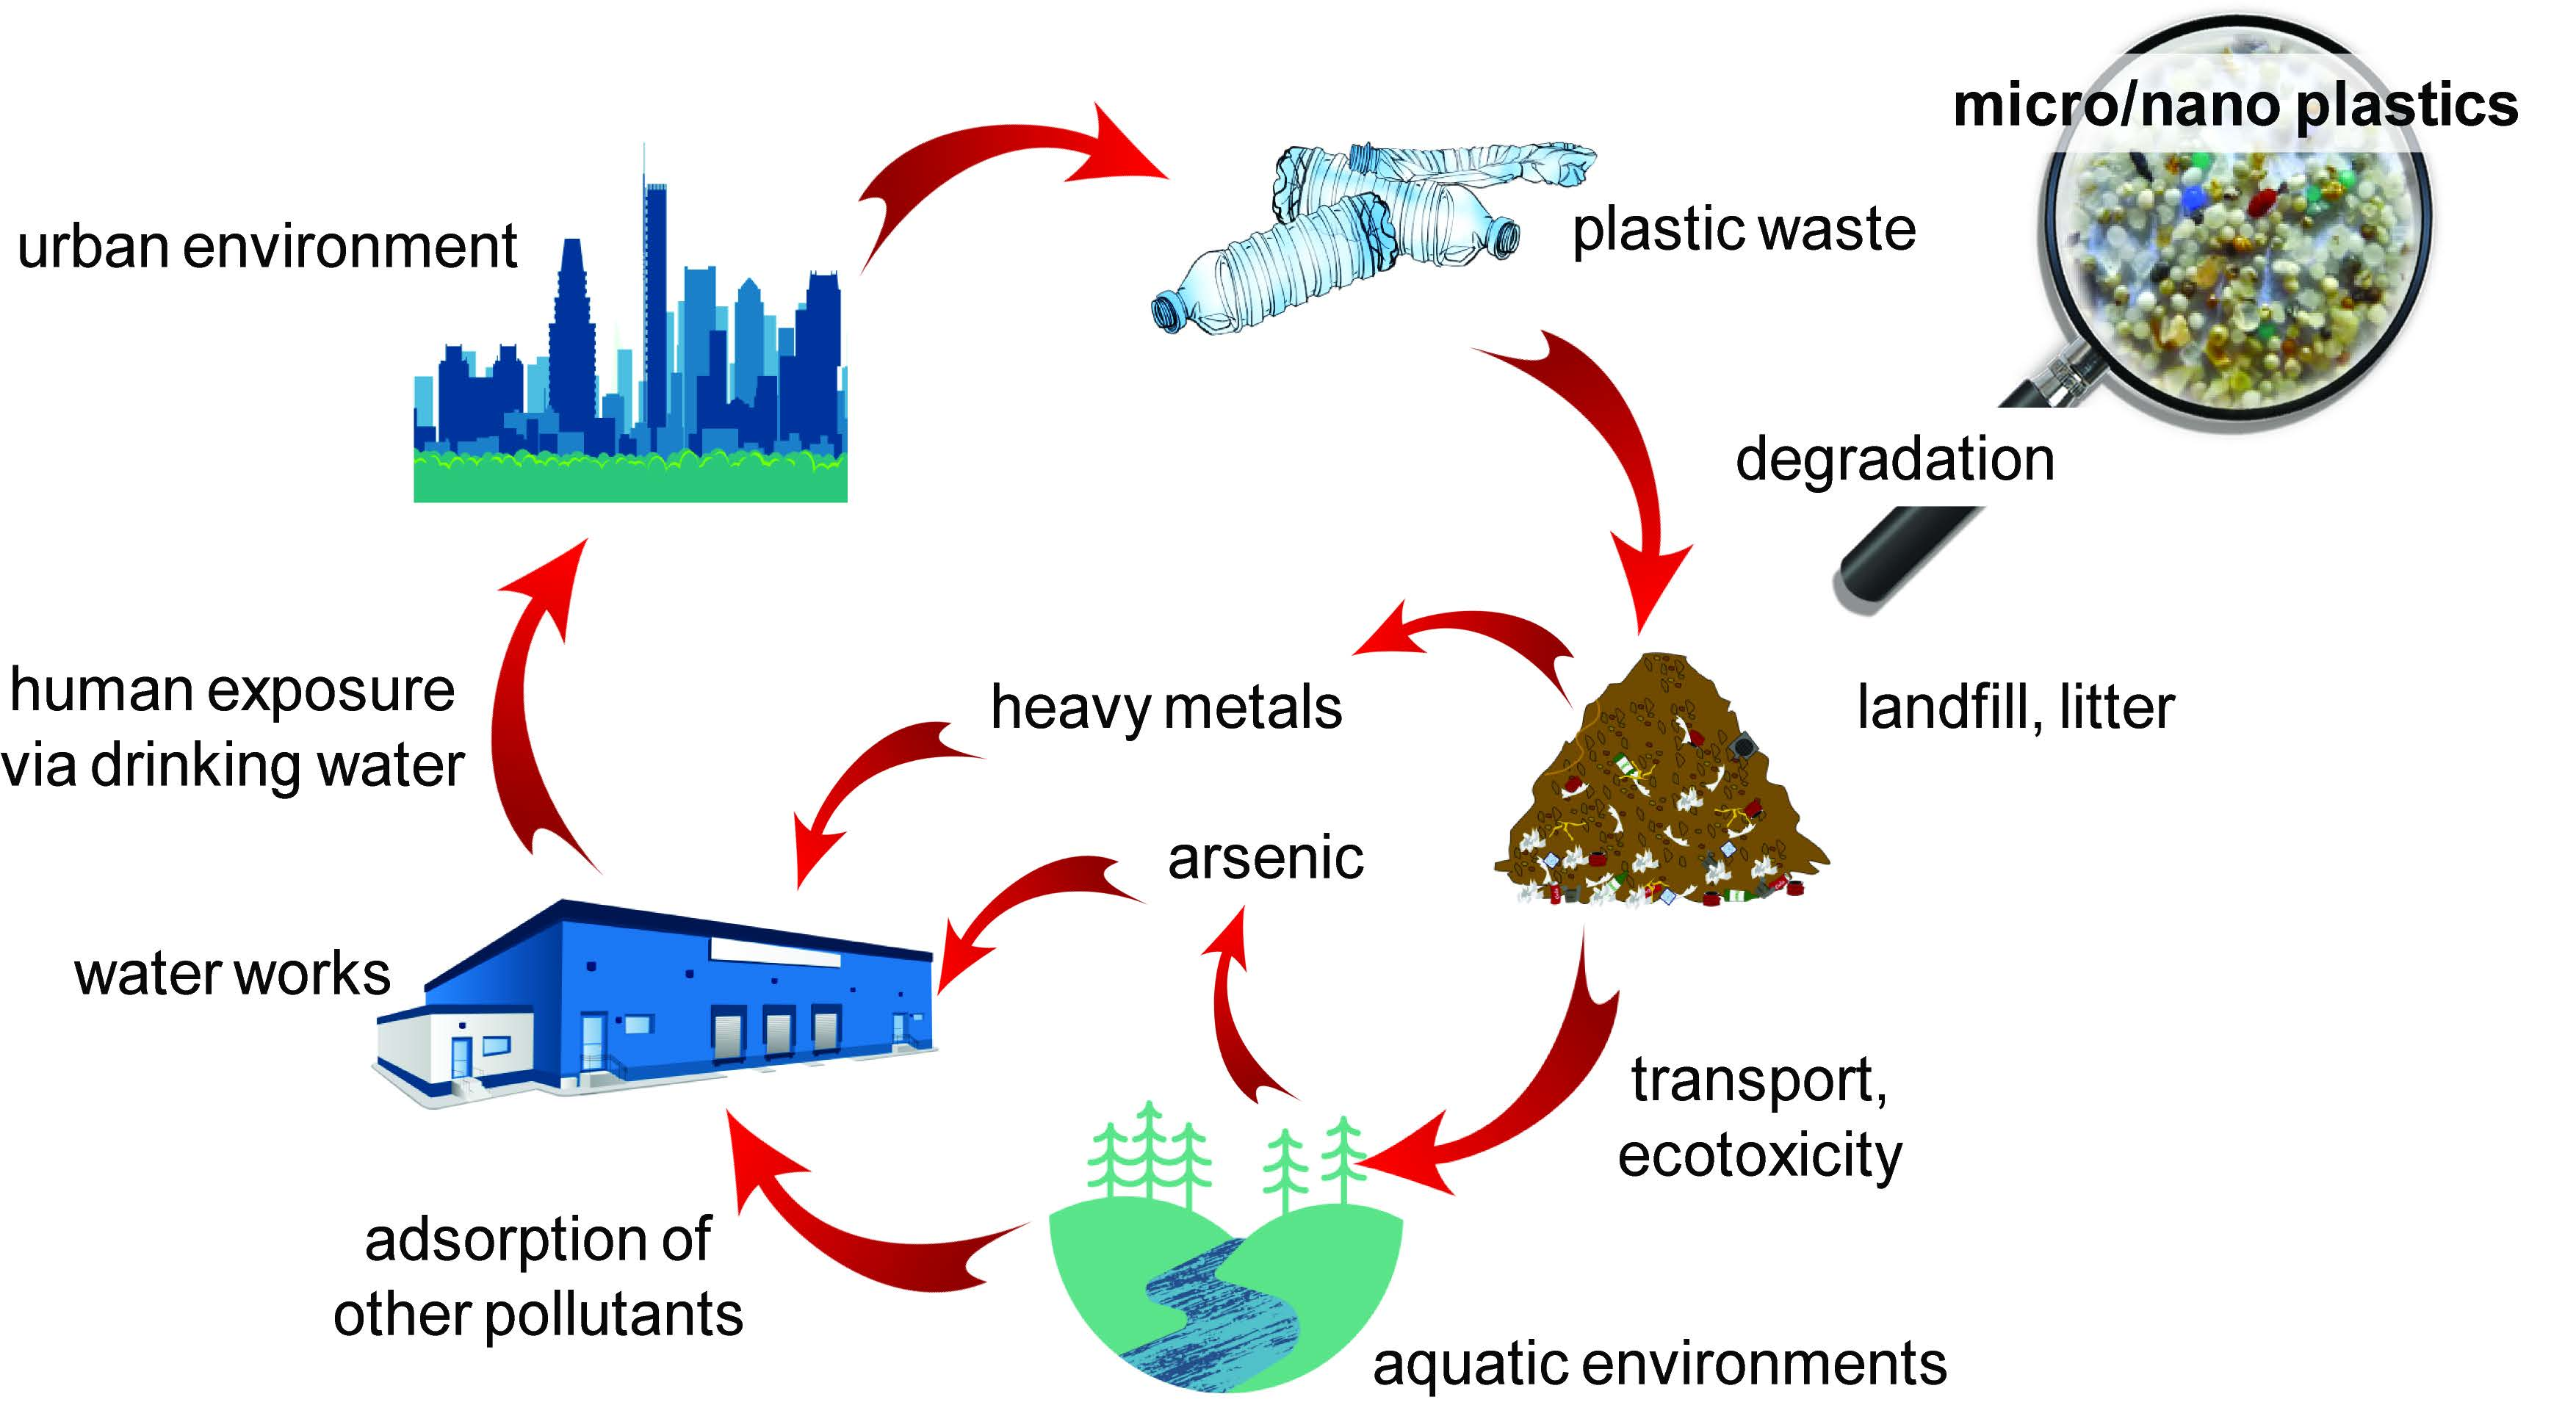 Unaccounted Microplastics in Wastewater Sludge: Where Do They Go